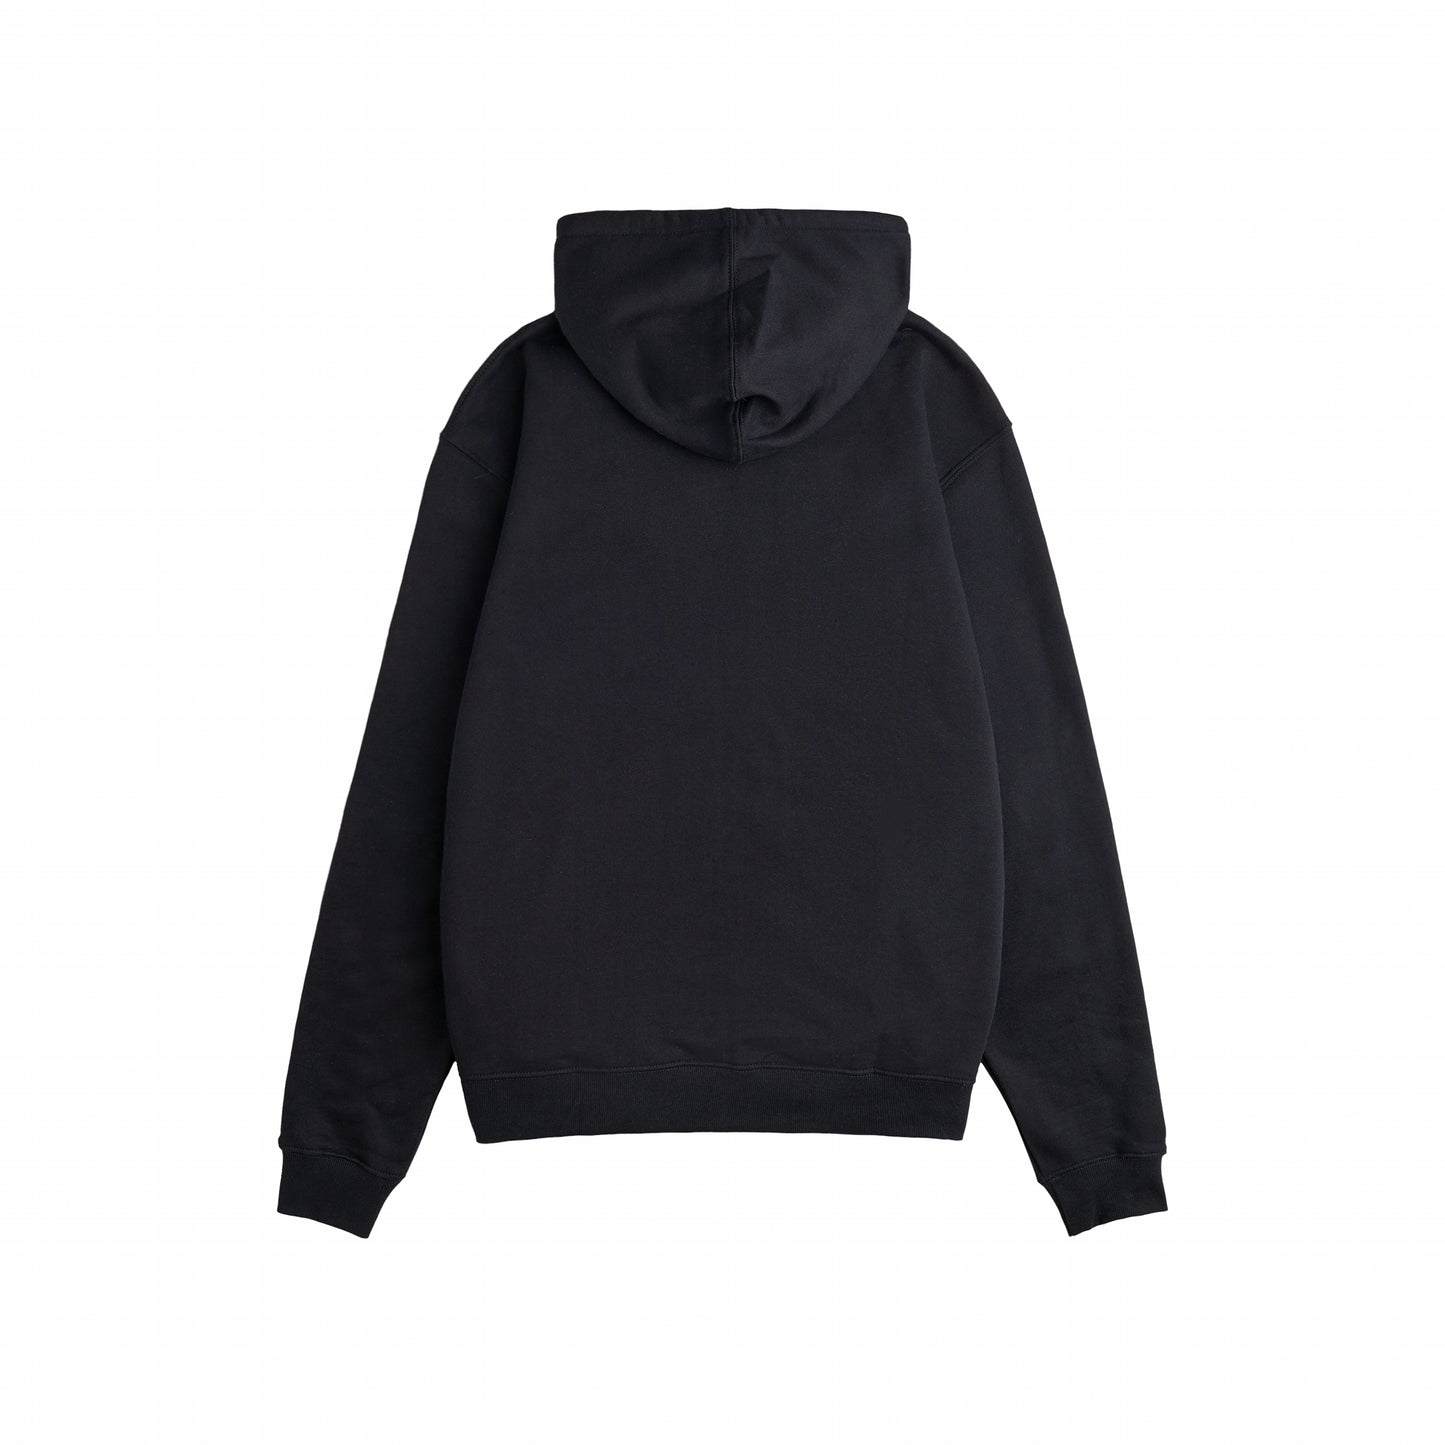 ACADEMY zip hoodie black rhinestones